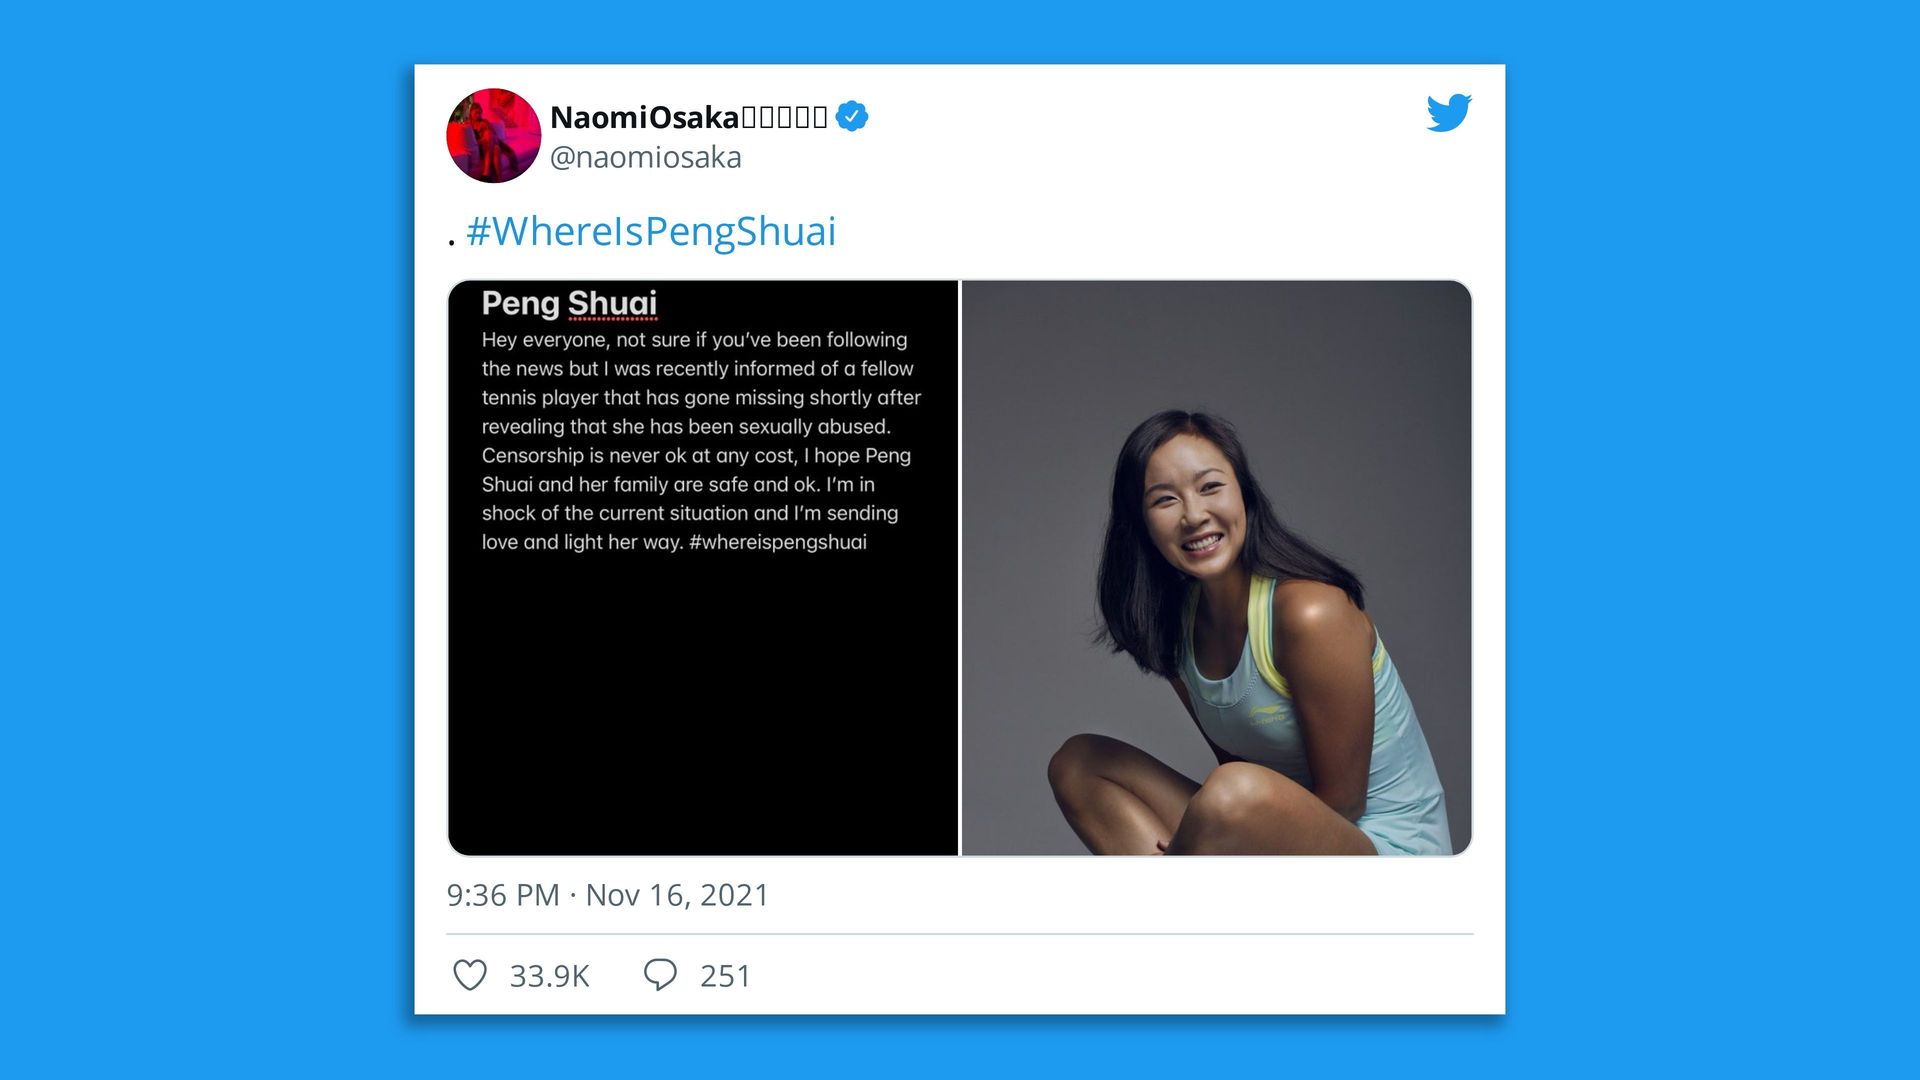 Naomi Osaka tweet about Peng Shuai